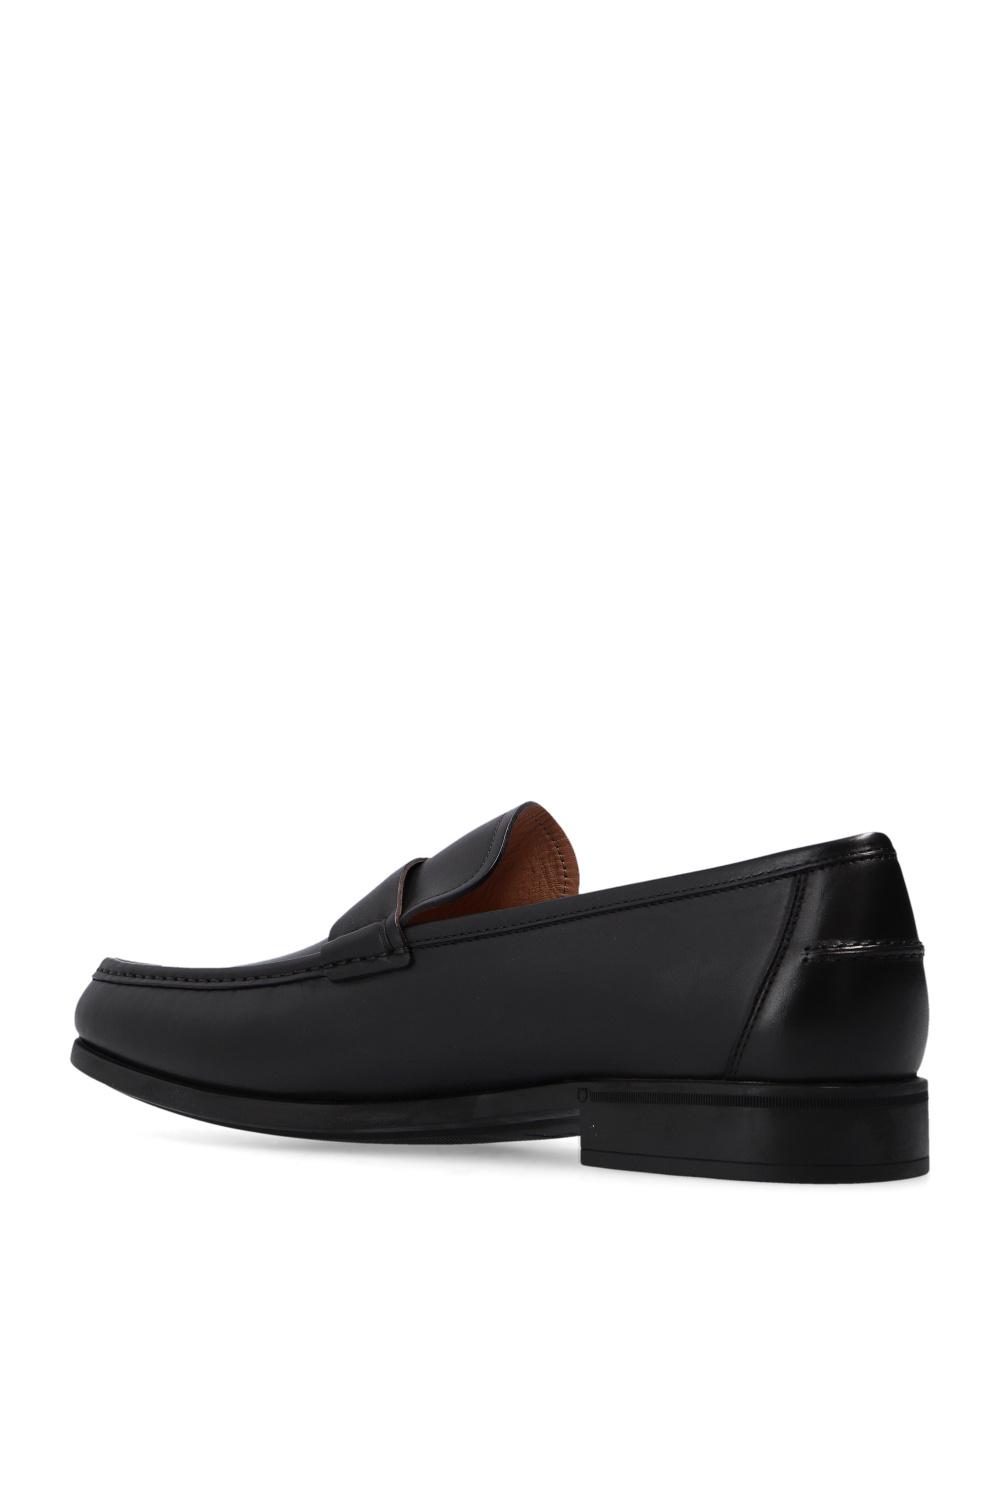 FERRAGAMO ‘Nilo’ leather shoes